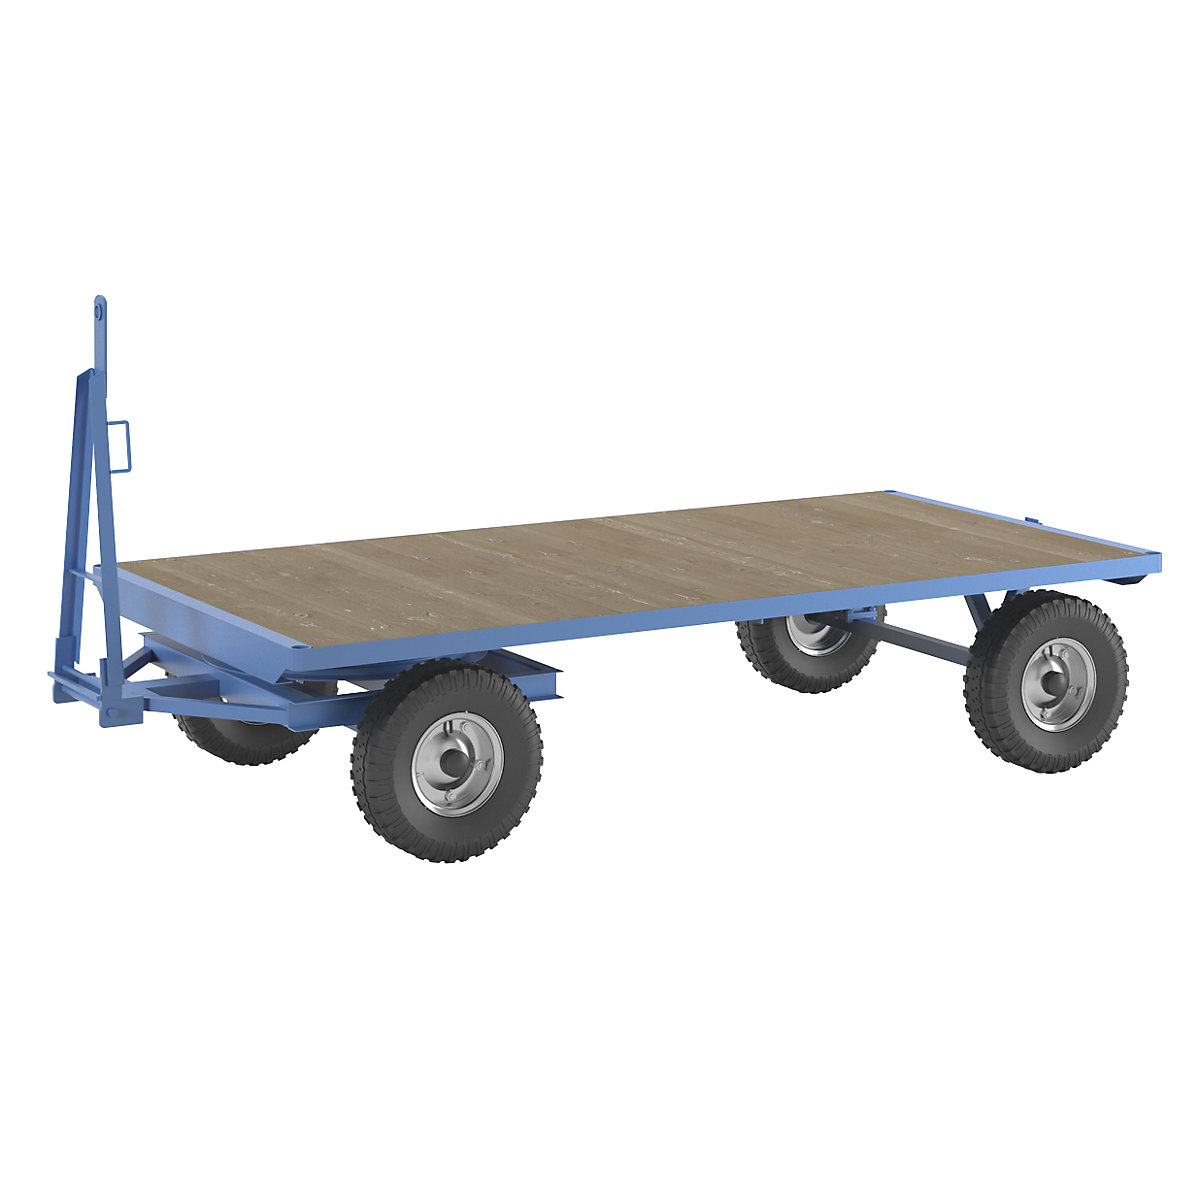 Rimorchio per trattori – eurokraft pro, sterzo a ralla, portata 5 t, superficie di carico 3 x 1,5 m, blu chiaro-1